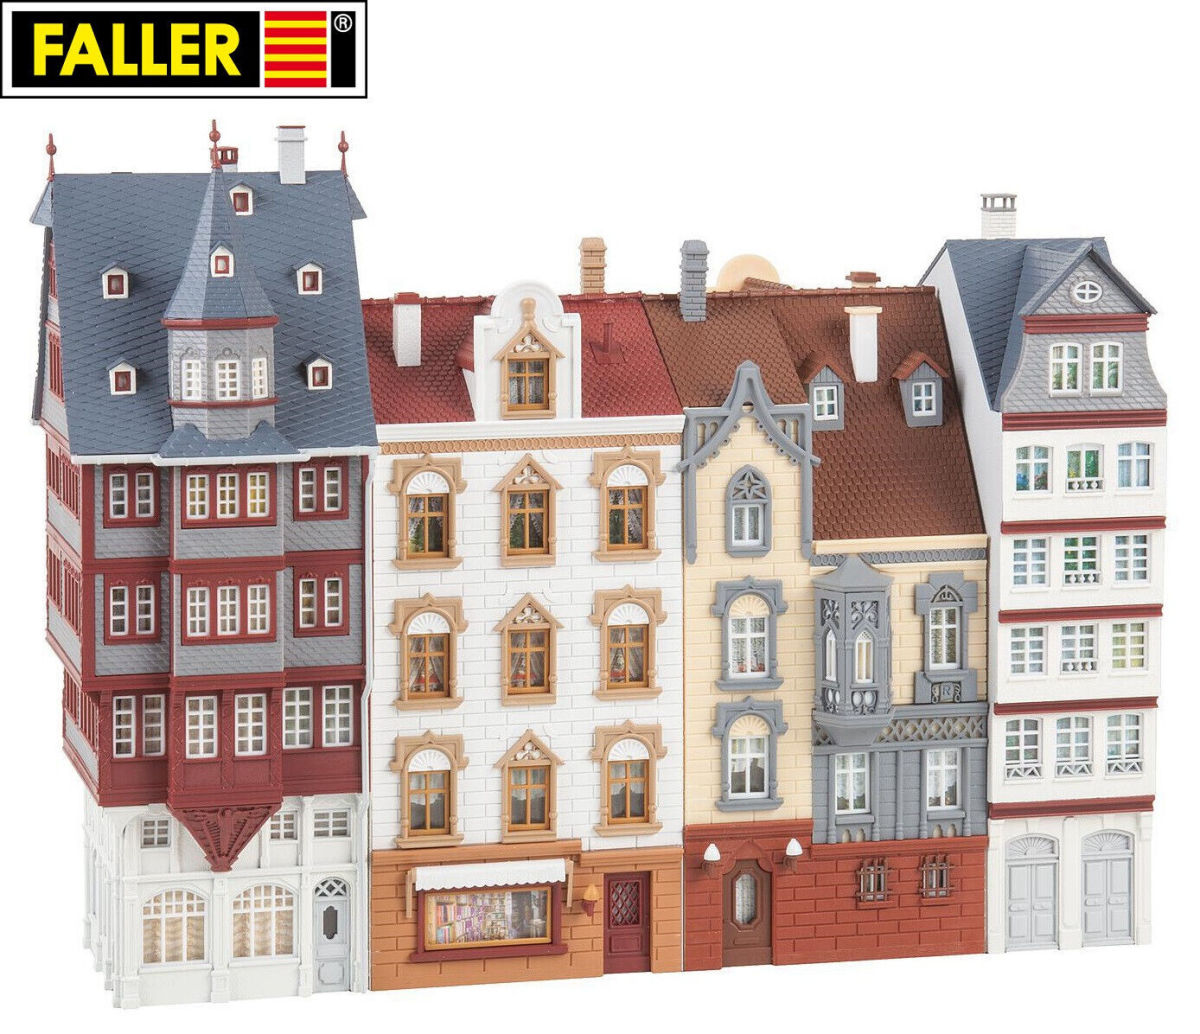 Faller H0 190063 Aktions-Set Altstadthäuser 